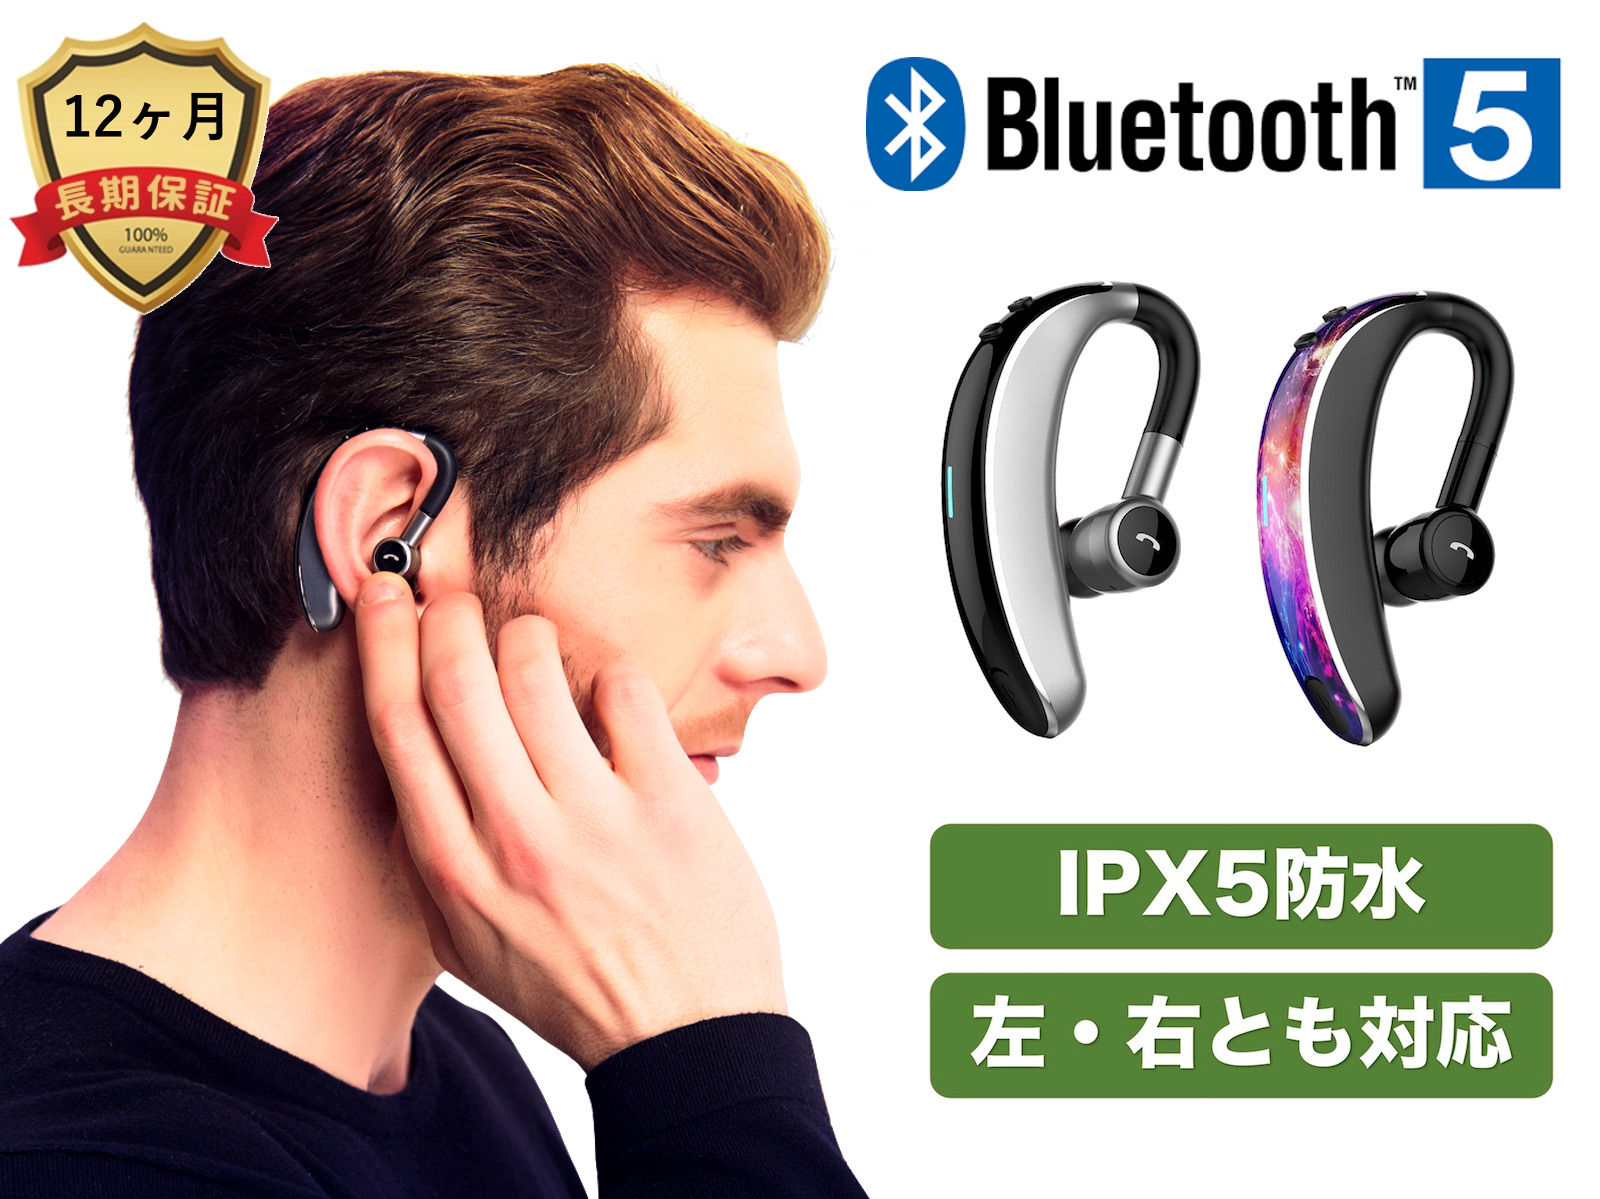 Bluetooth 超歓迎された 5.0 IPX5防水 ワイヤレスイヤホン 左右とも対応 セール特価 連続20時間使用 日本語説明書 日本正規品 ヘッドホン 片耳専用 超軽量 超小型 対応 ヘッドセット ブルートゥース iPhone COOPO 高音質 マイク内蔵 スマホ Android CP-V7 送料無料